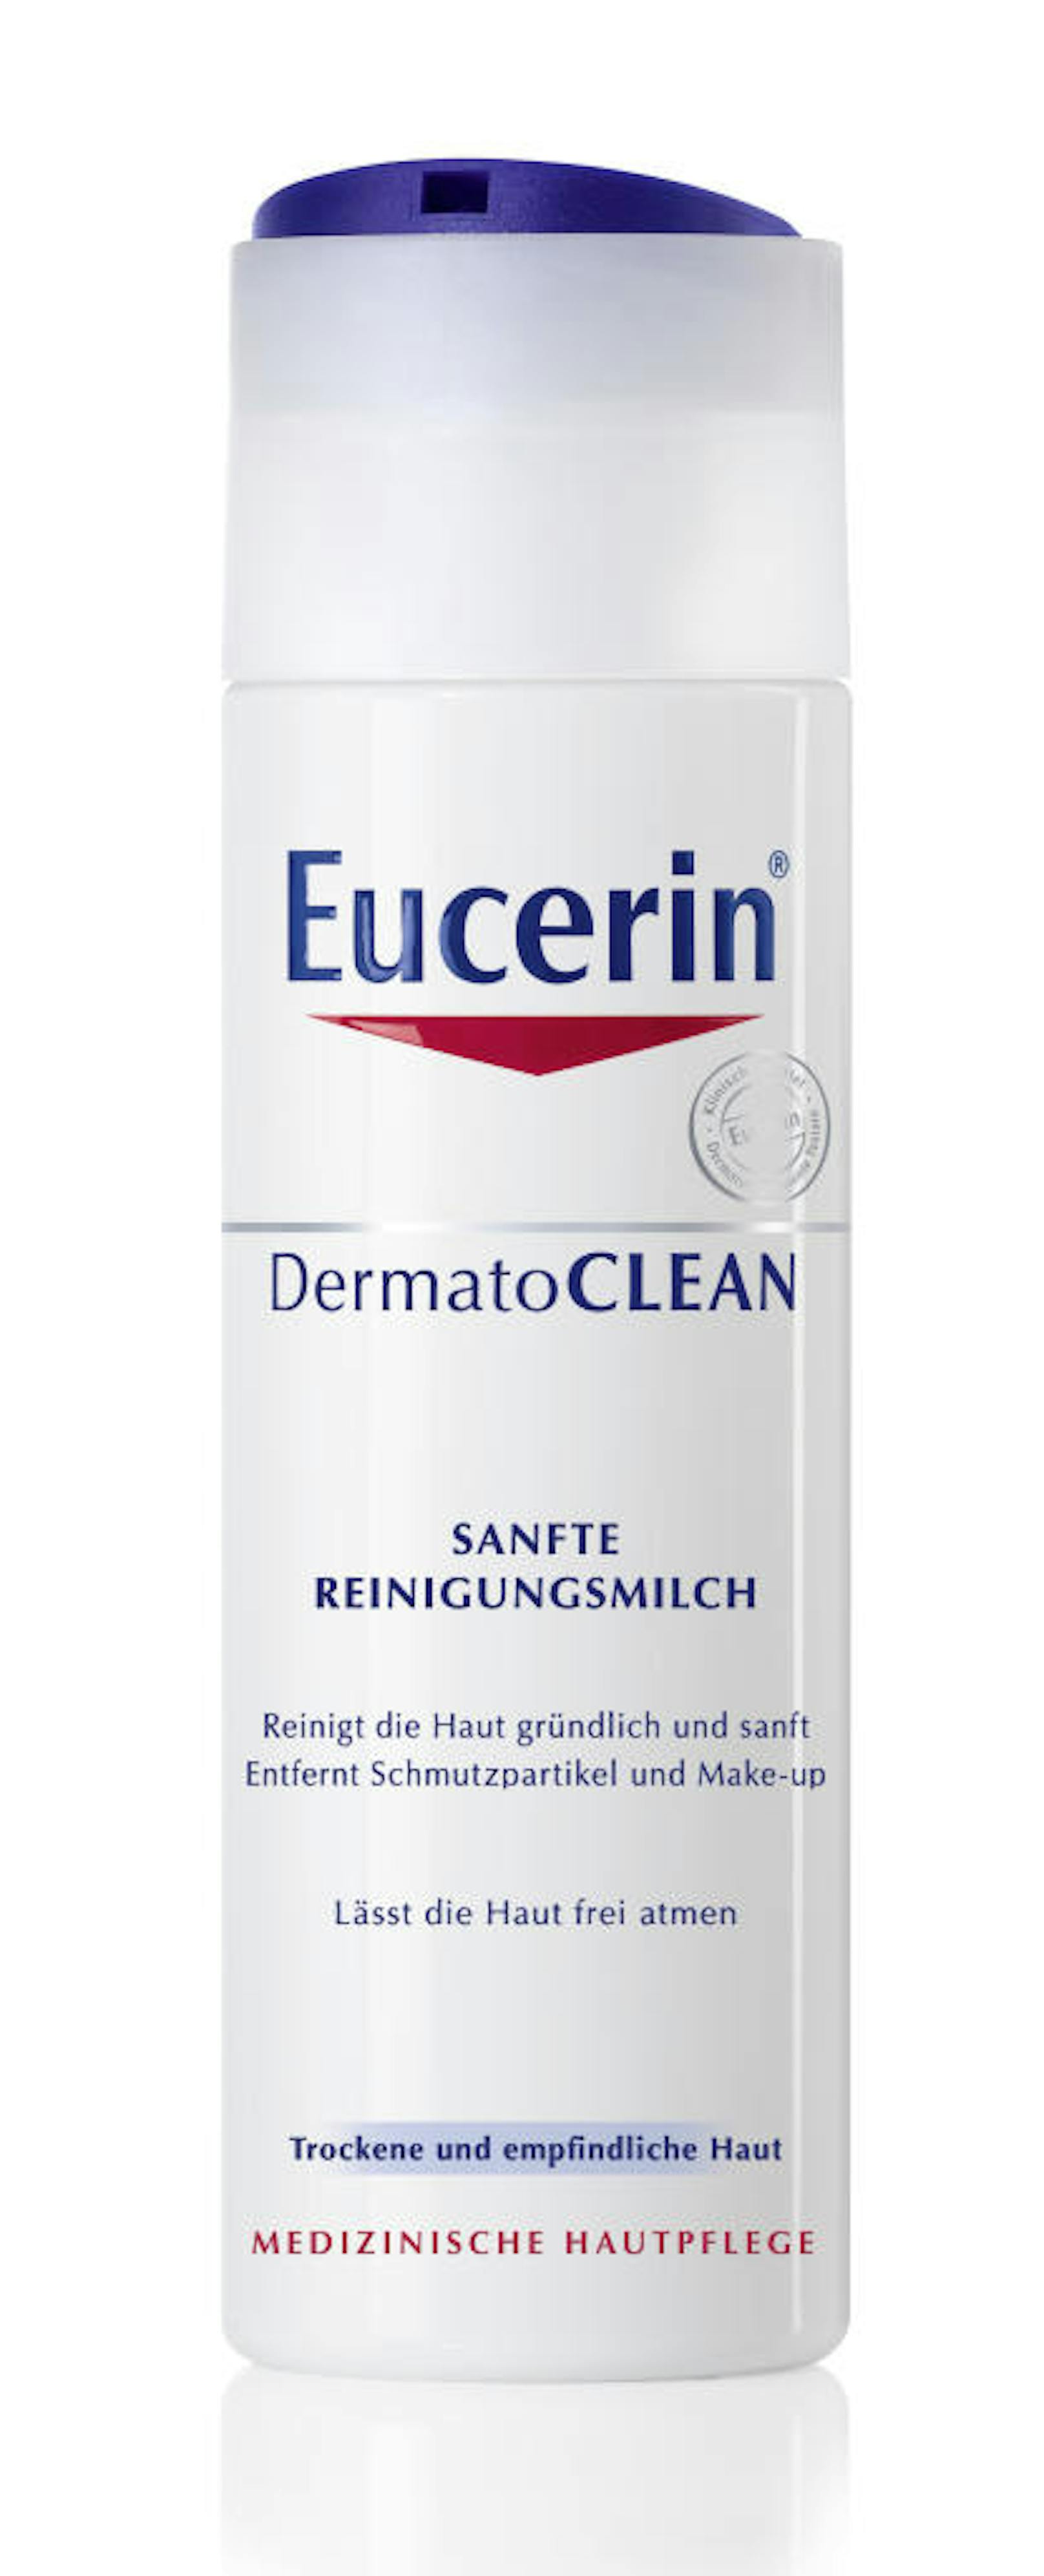 Die Eucerin DermatoClean Reinigungsmilch reinigt die Haut sanft, entfernt Unreinheiten sowie Make-up und fördert den natürlichen Feuchtigkeitsausgleich.